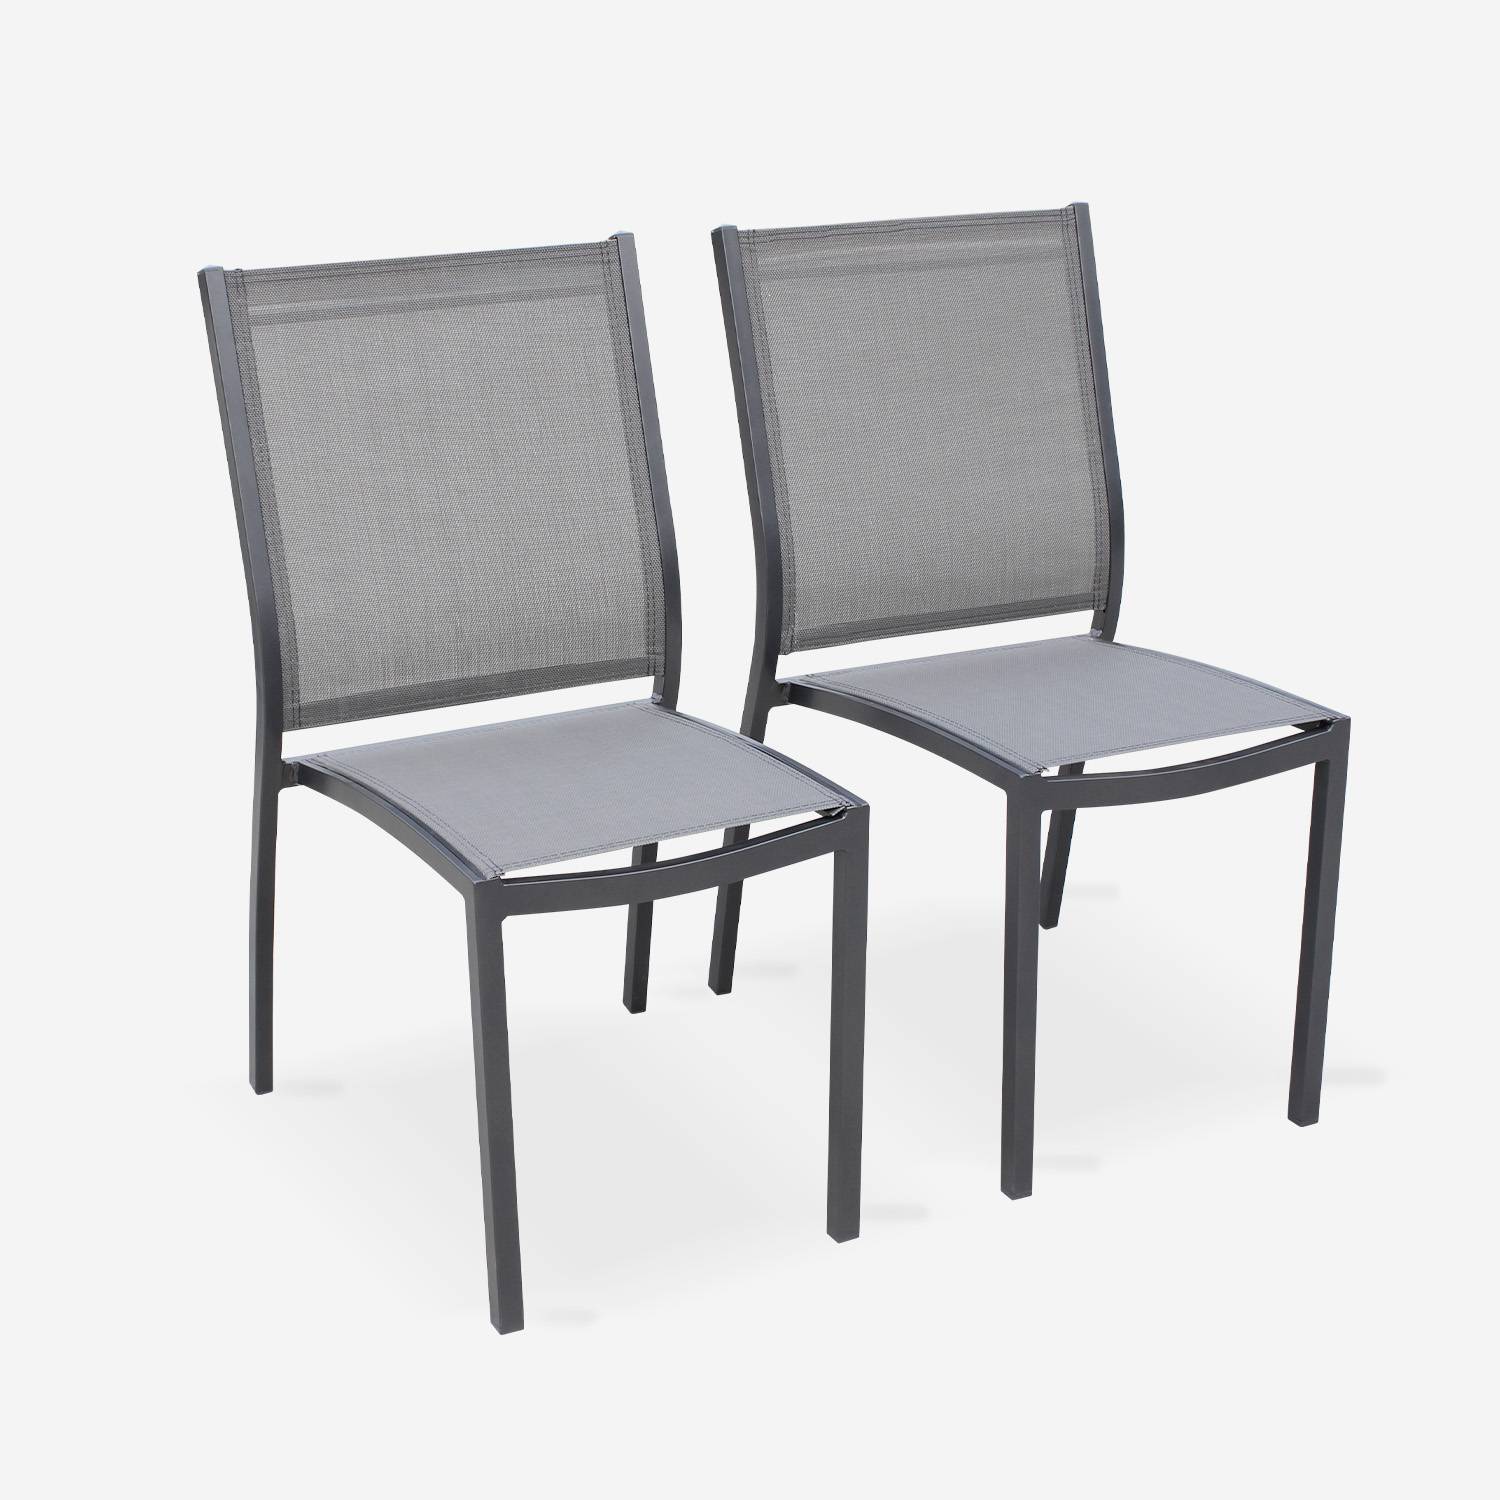 2er Set Gartenstühle - ORLANDO Farbe Anthrazit / Dunkelgrau - Gestell aus Aluminum, Sitz aus Textilene, stapelbar Photo1